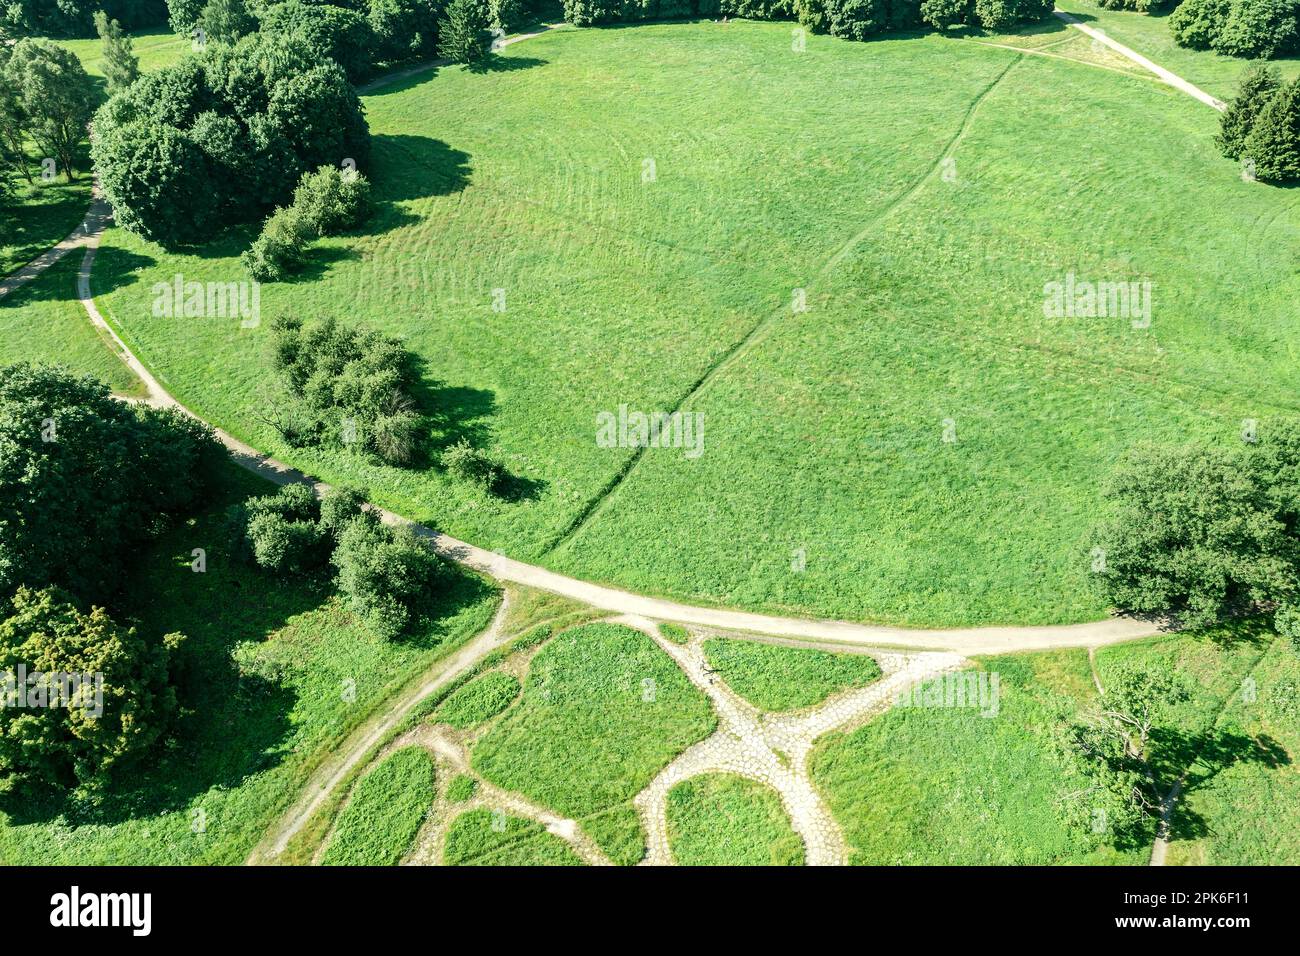 vista aerea del parco estivo con alberi verdi, prati e sentieri per passeggiate Foto Stock